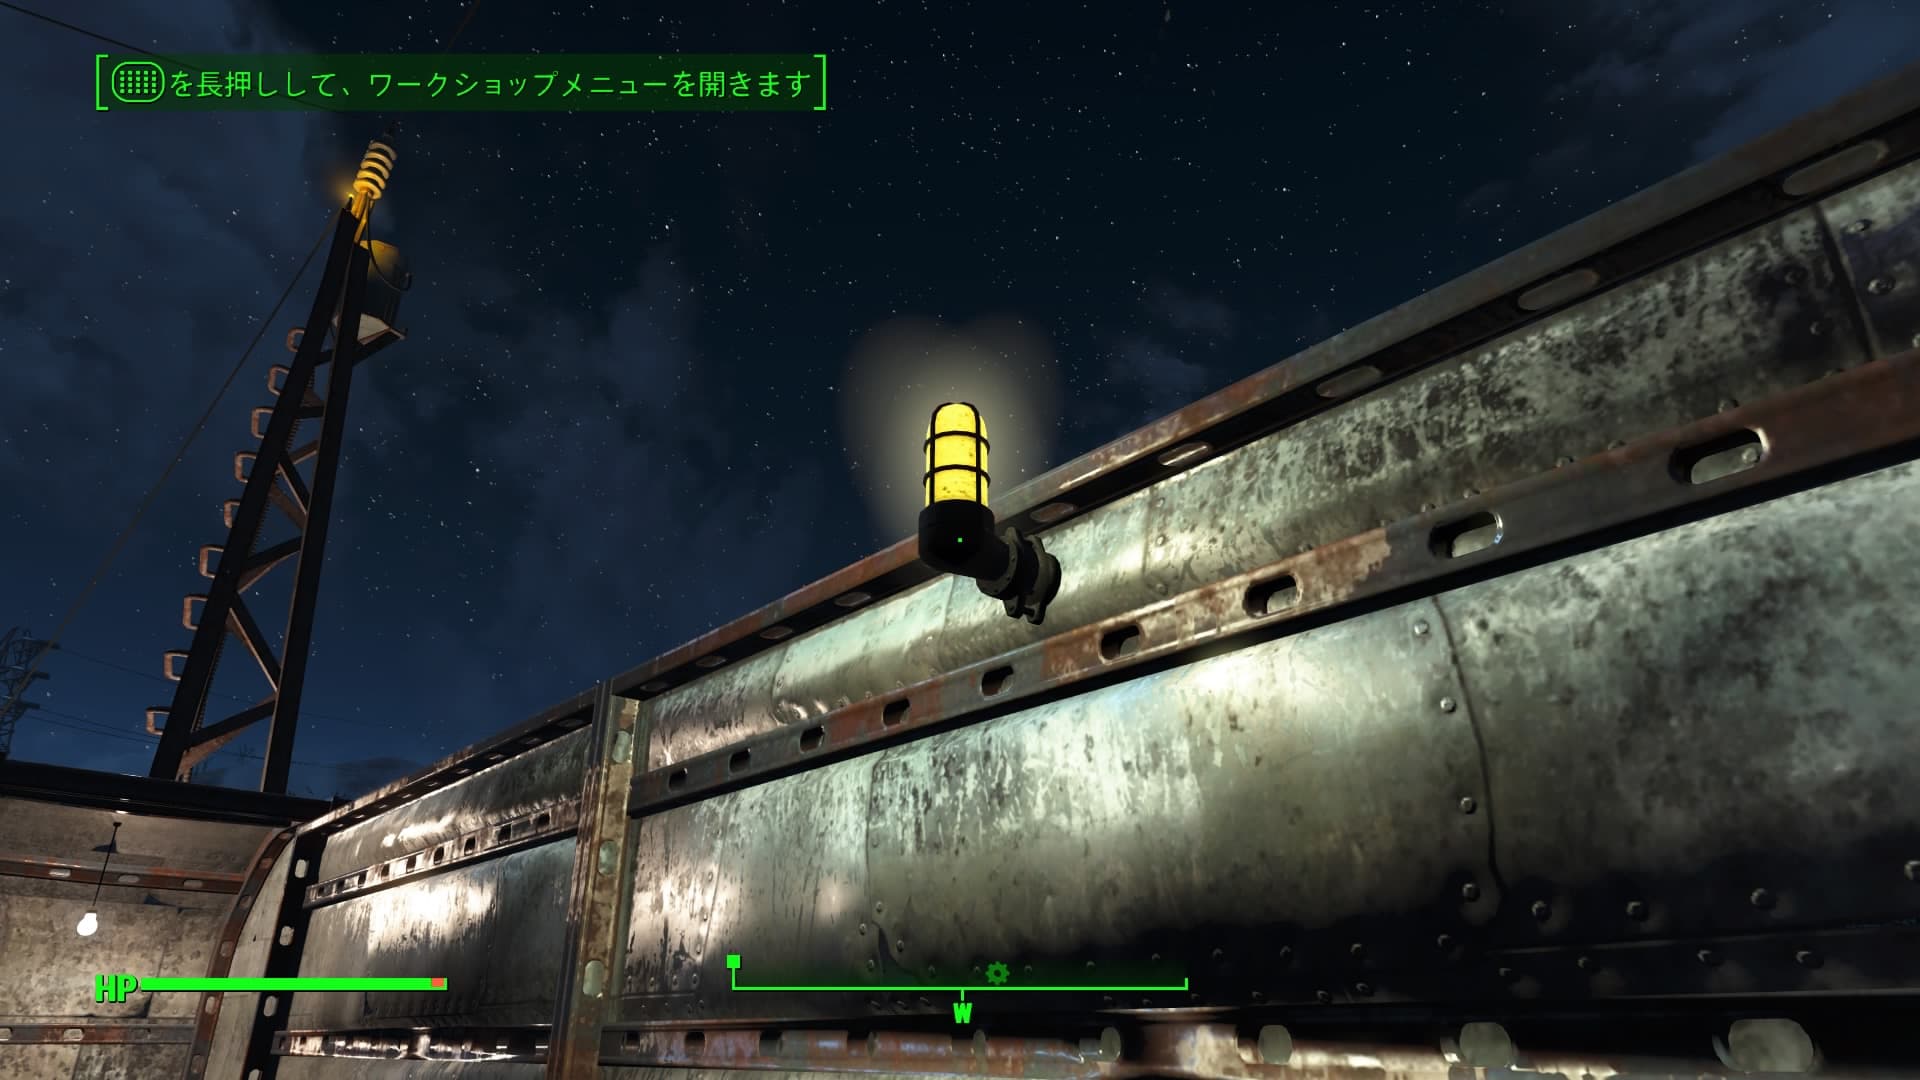 Fallout4 クラフトで拠点を明るくするのが楽しい ライトとパイロン作成で銅が減っていく あまげー